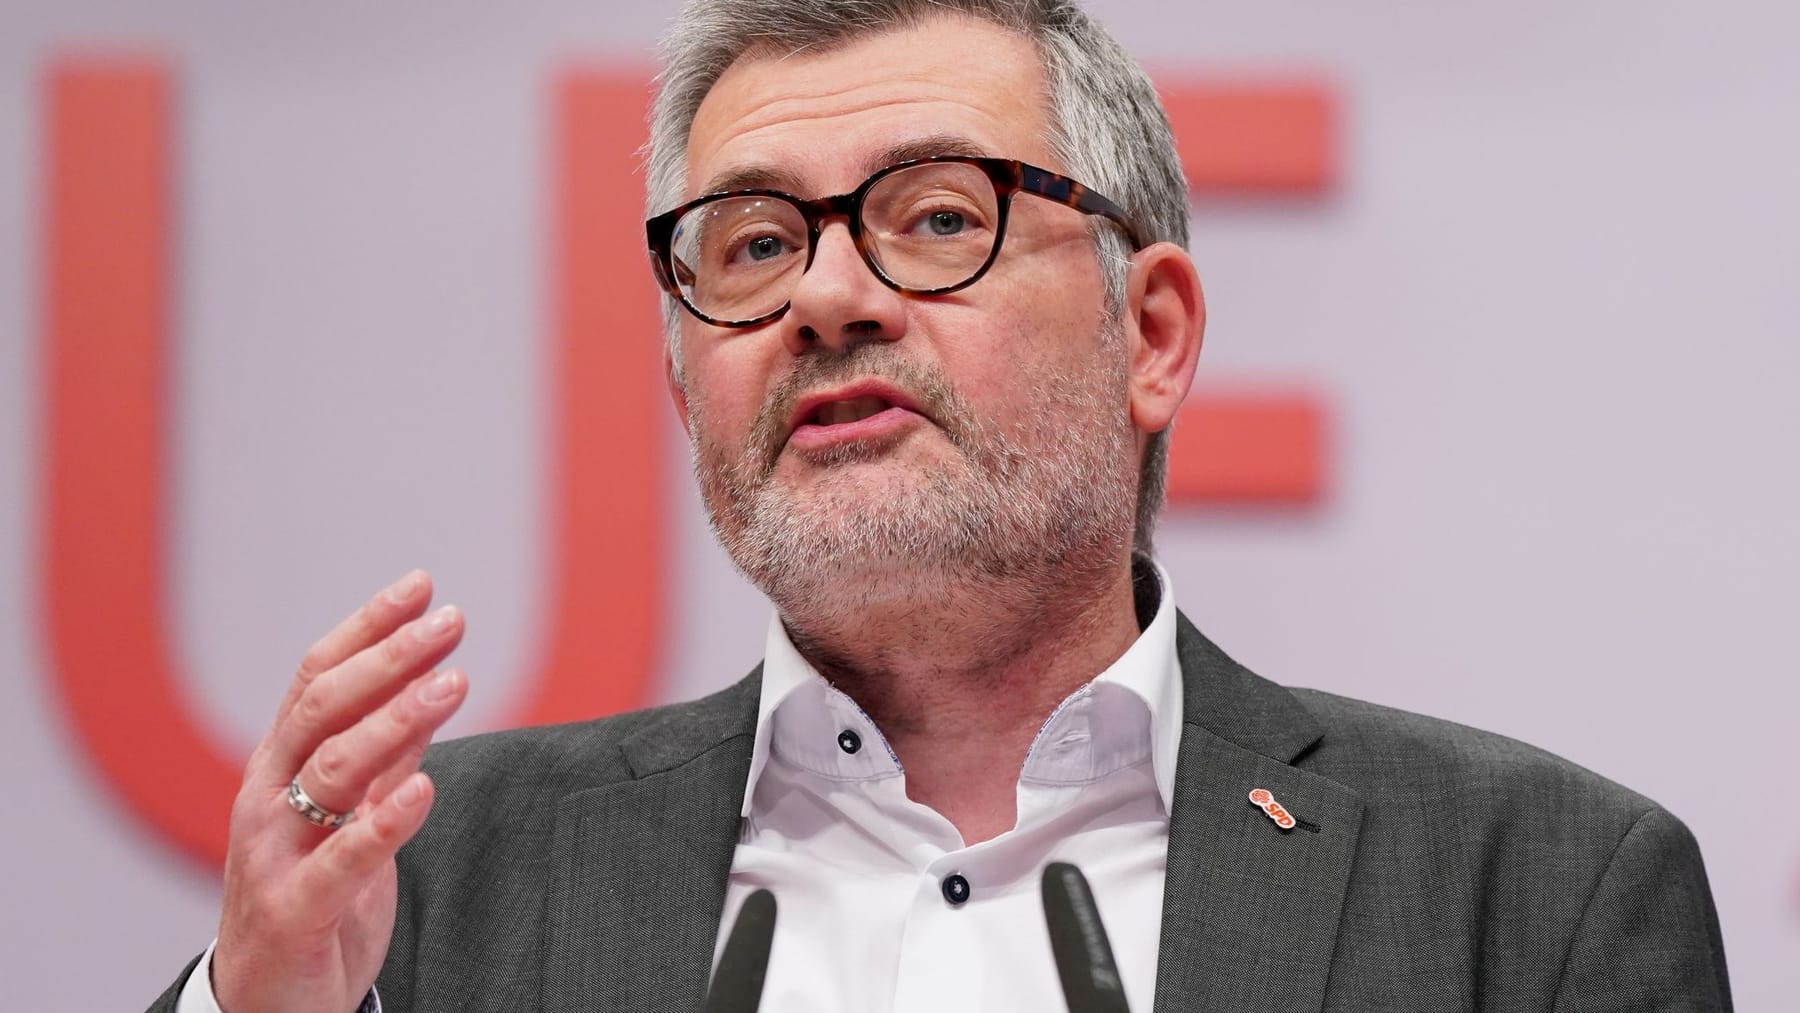 Przedstawiciel Polski liczy na zmiany po wyborach